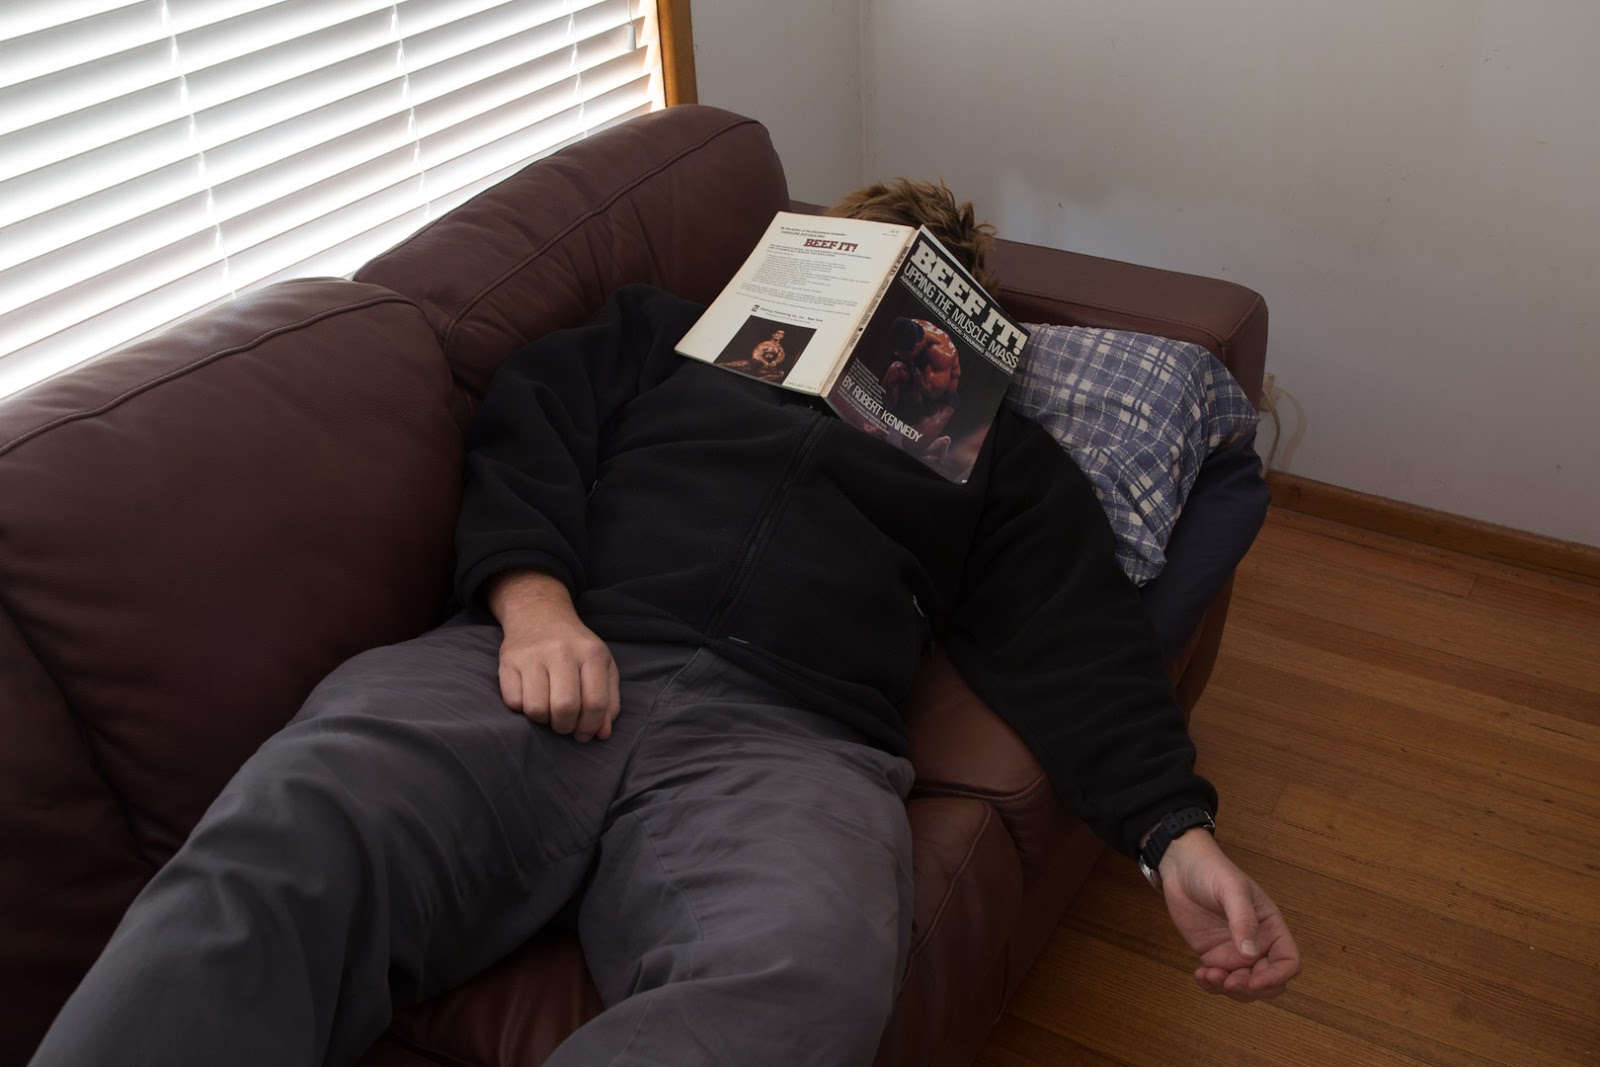 book-over-face-sleeping